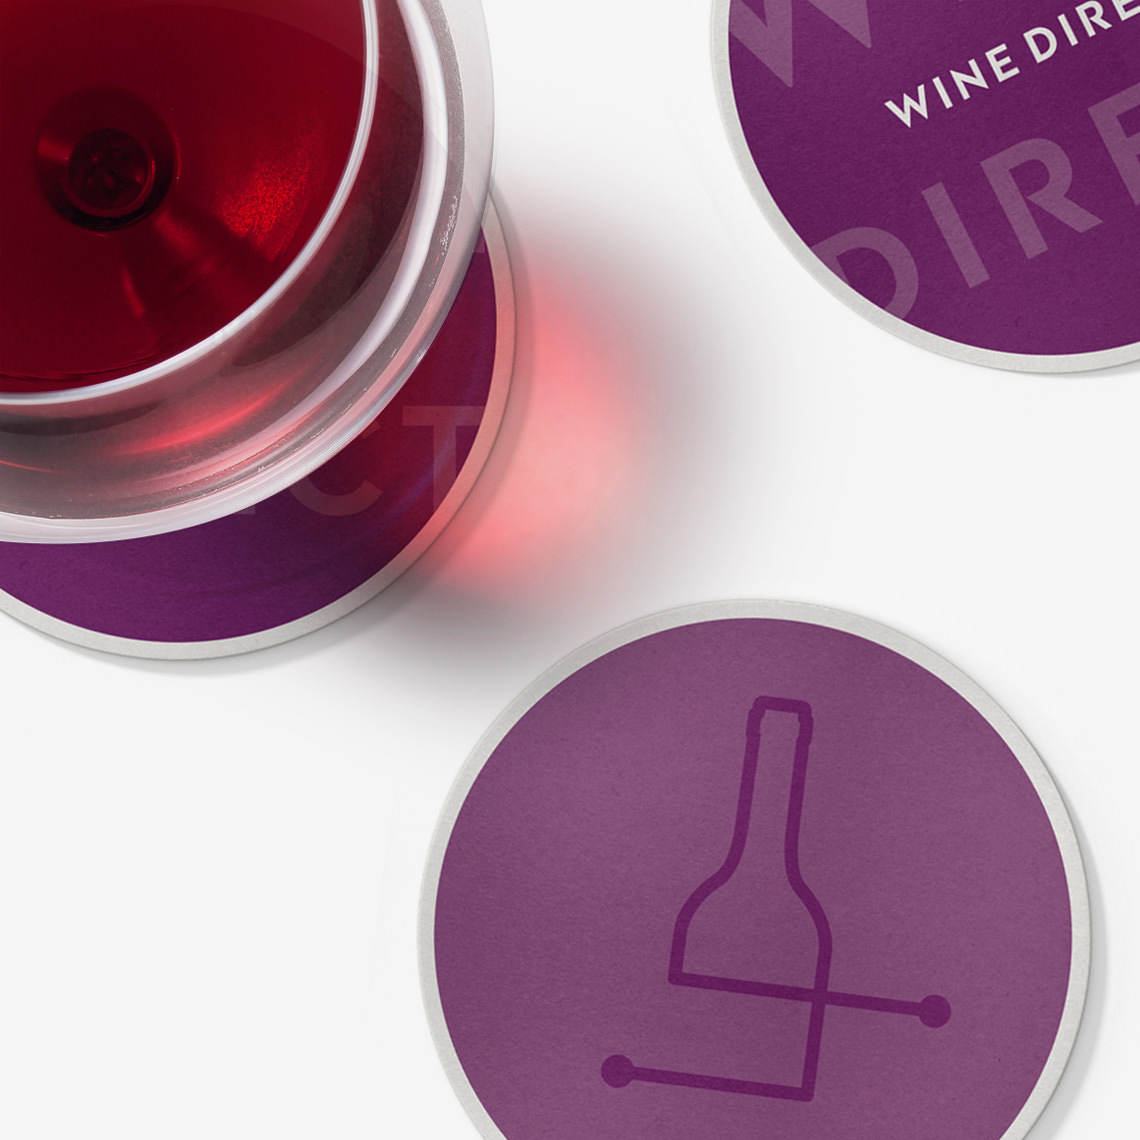 WineDirect Branding